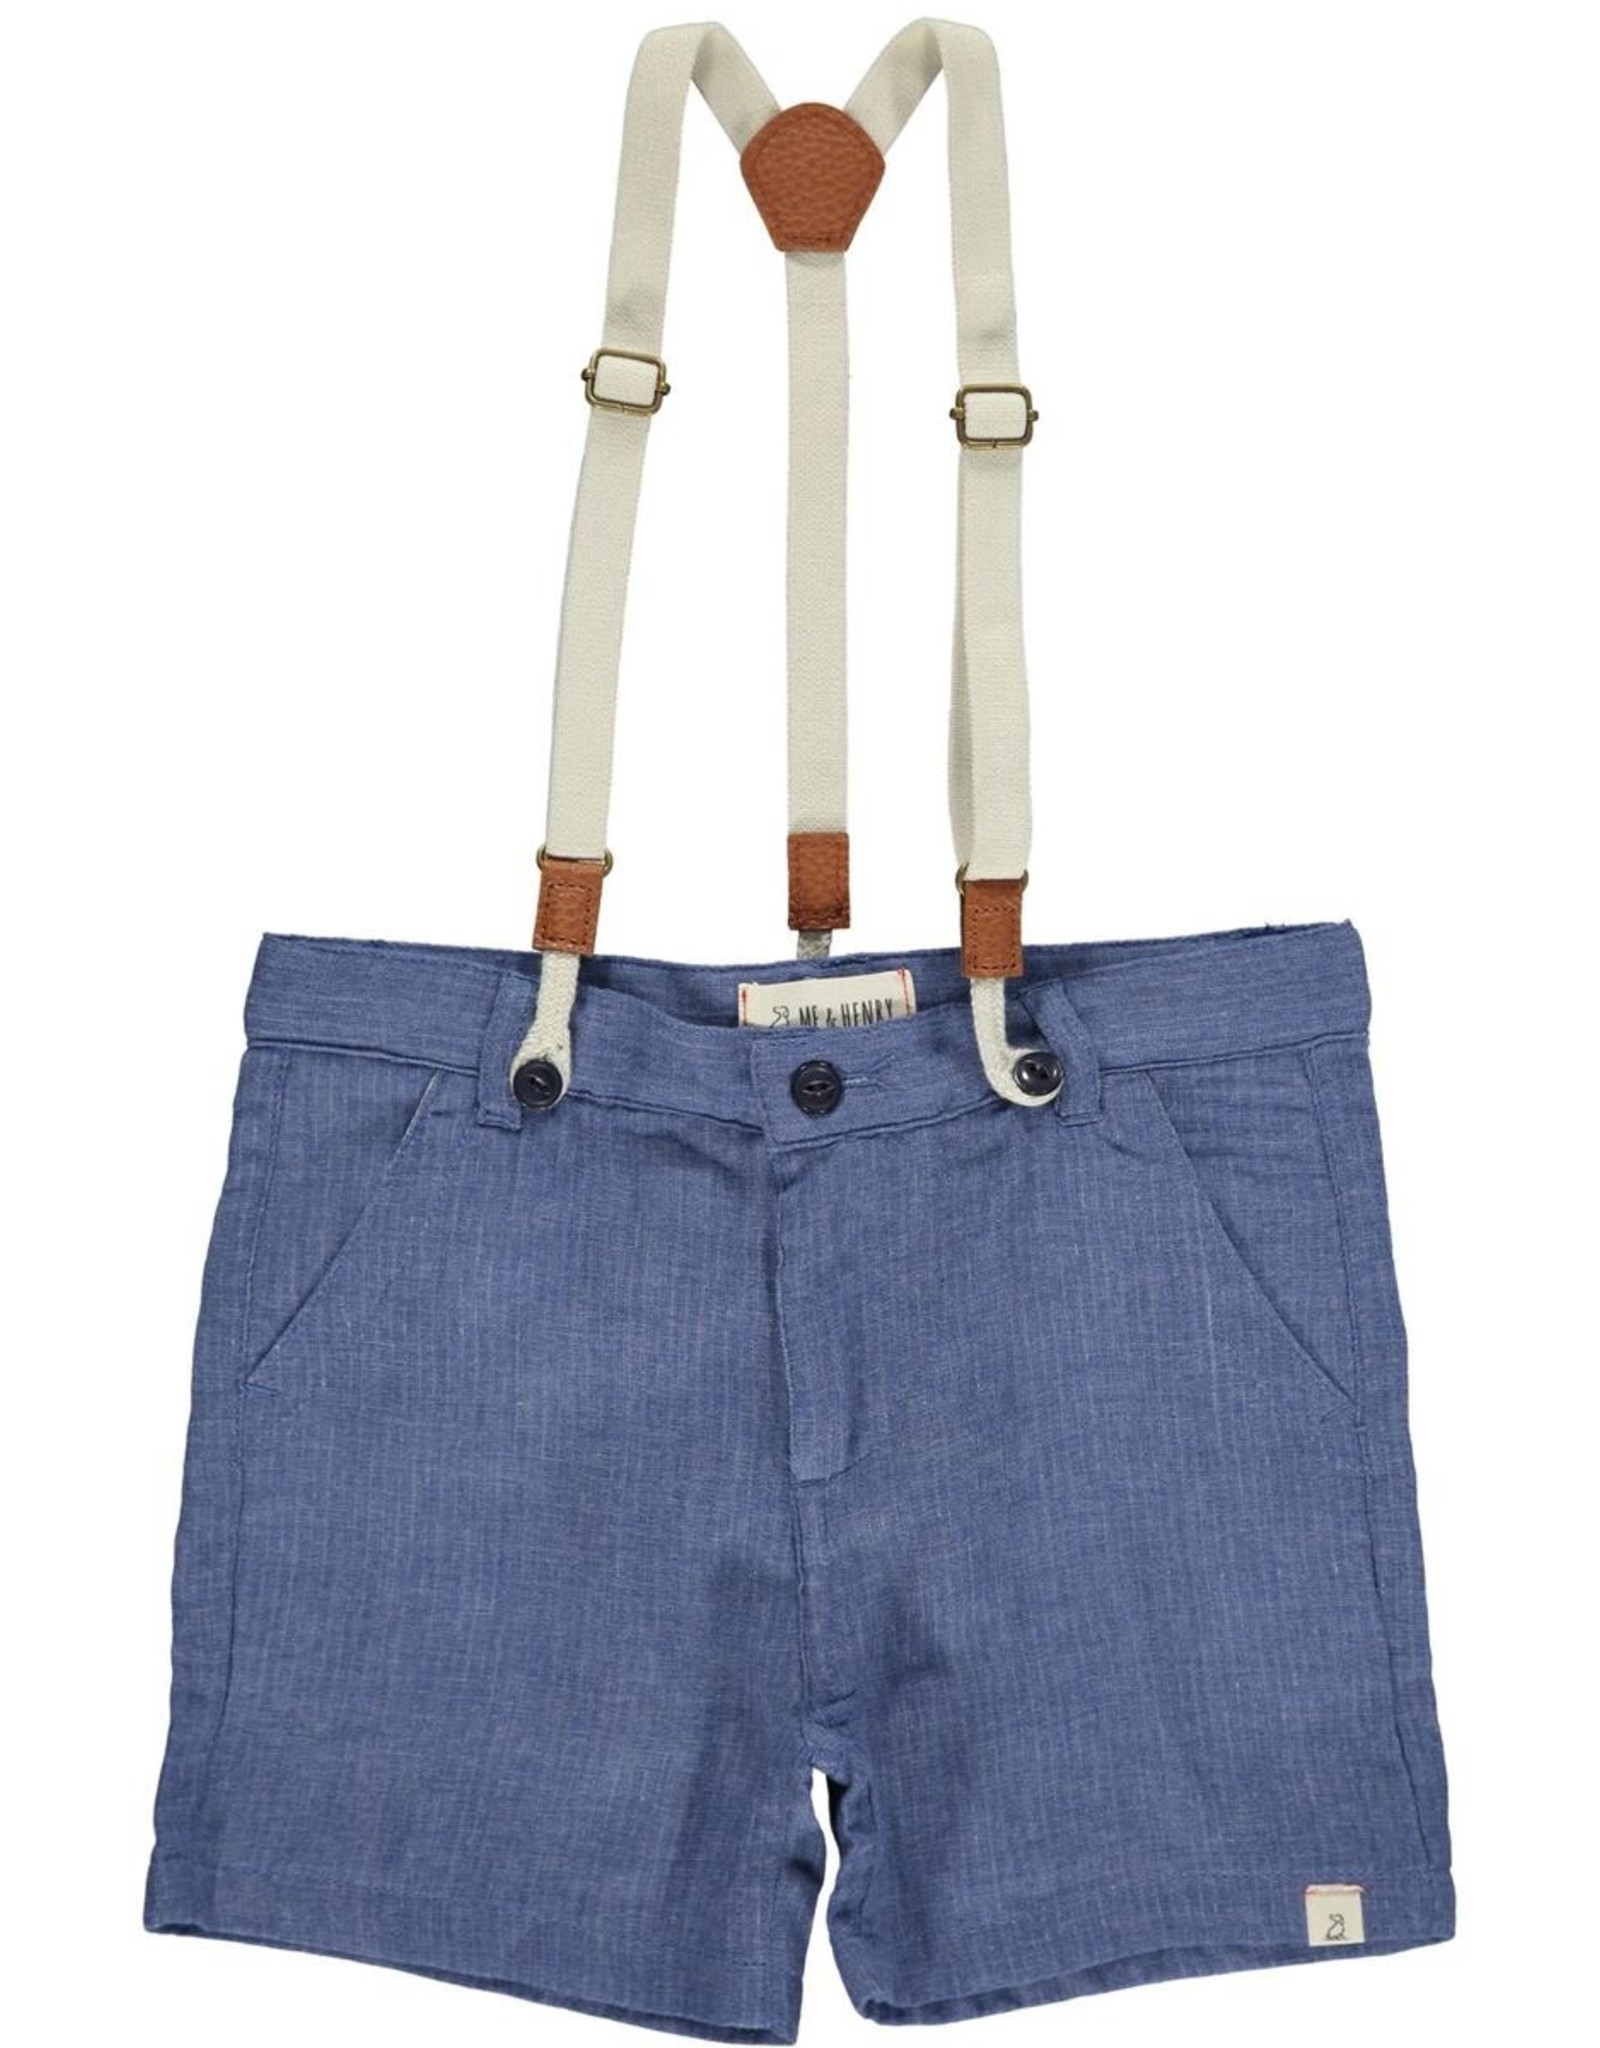 Me & Henry CAPTAIN Shorts w/ Suspenders Blue Gauze